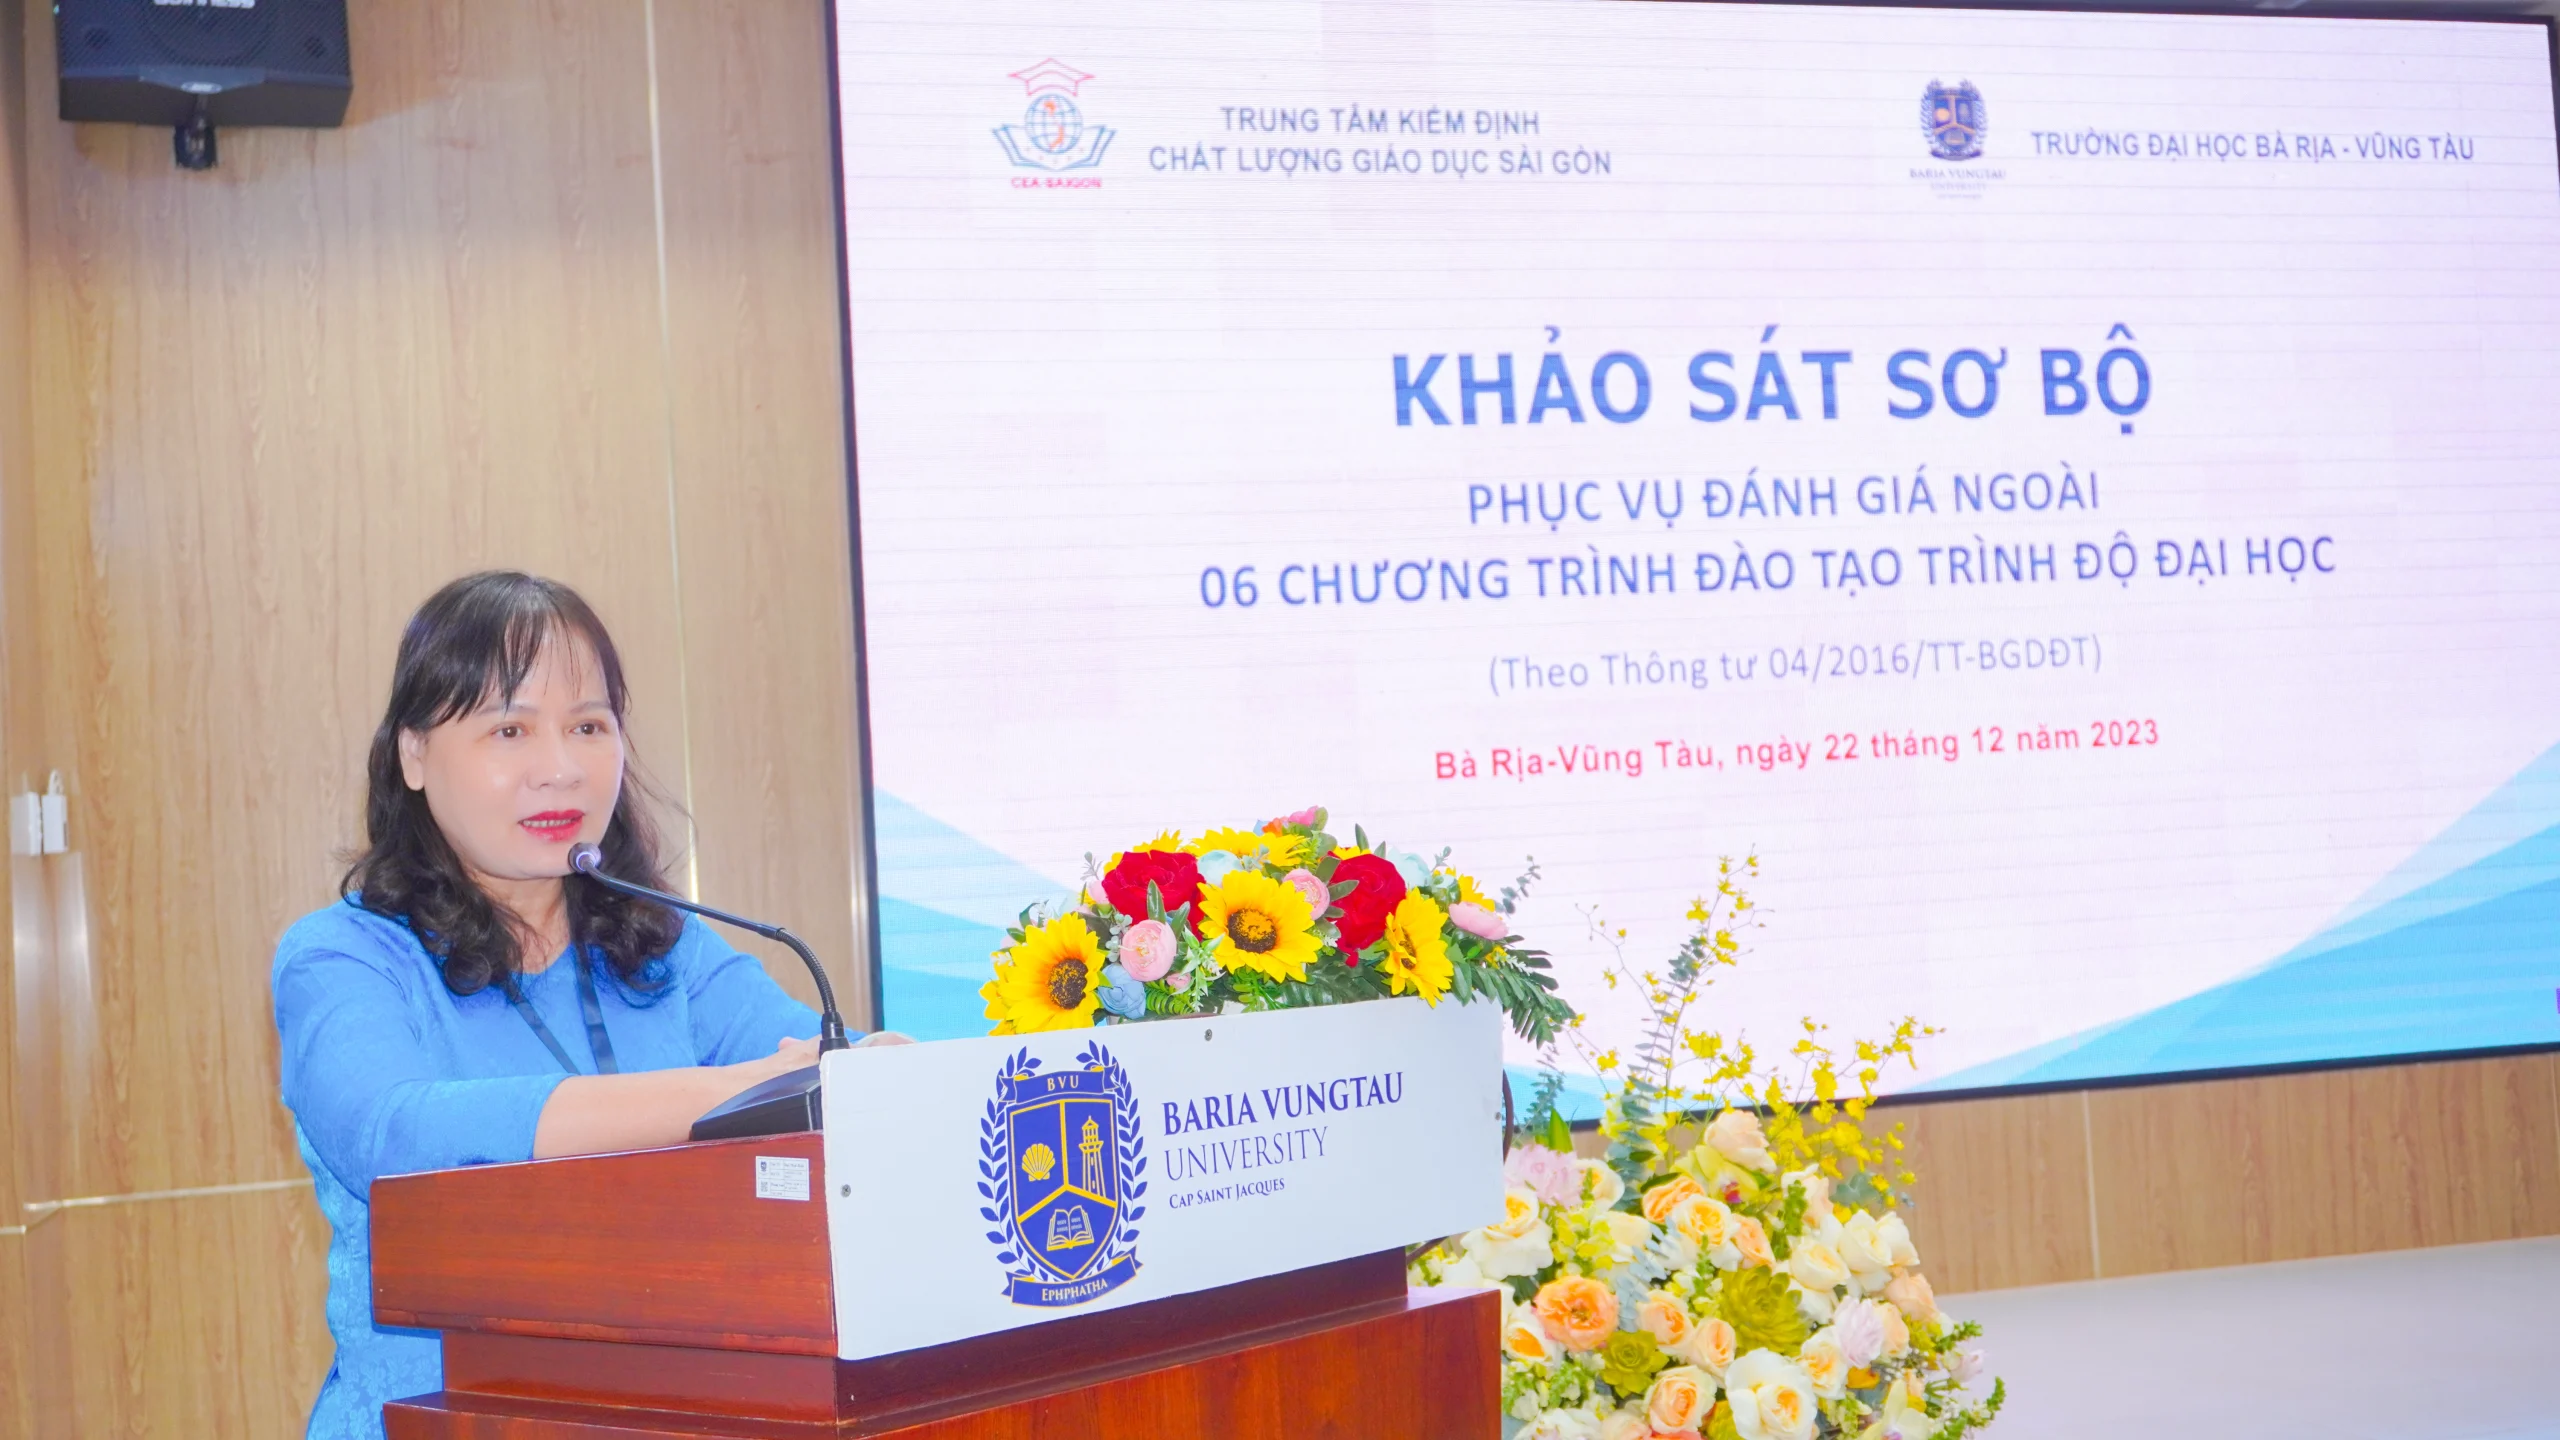 BVU phối hợp với Trung tâm Kiểm định Chất lượng giáo dục Sài Gòn tổ chức Lễ khai mạc đợt Khảo sát sơ bộ 06 chương trình đào tạo